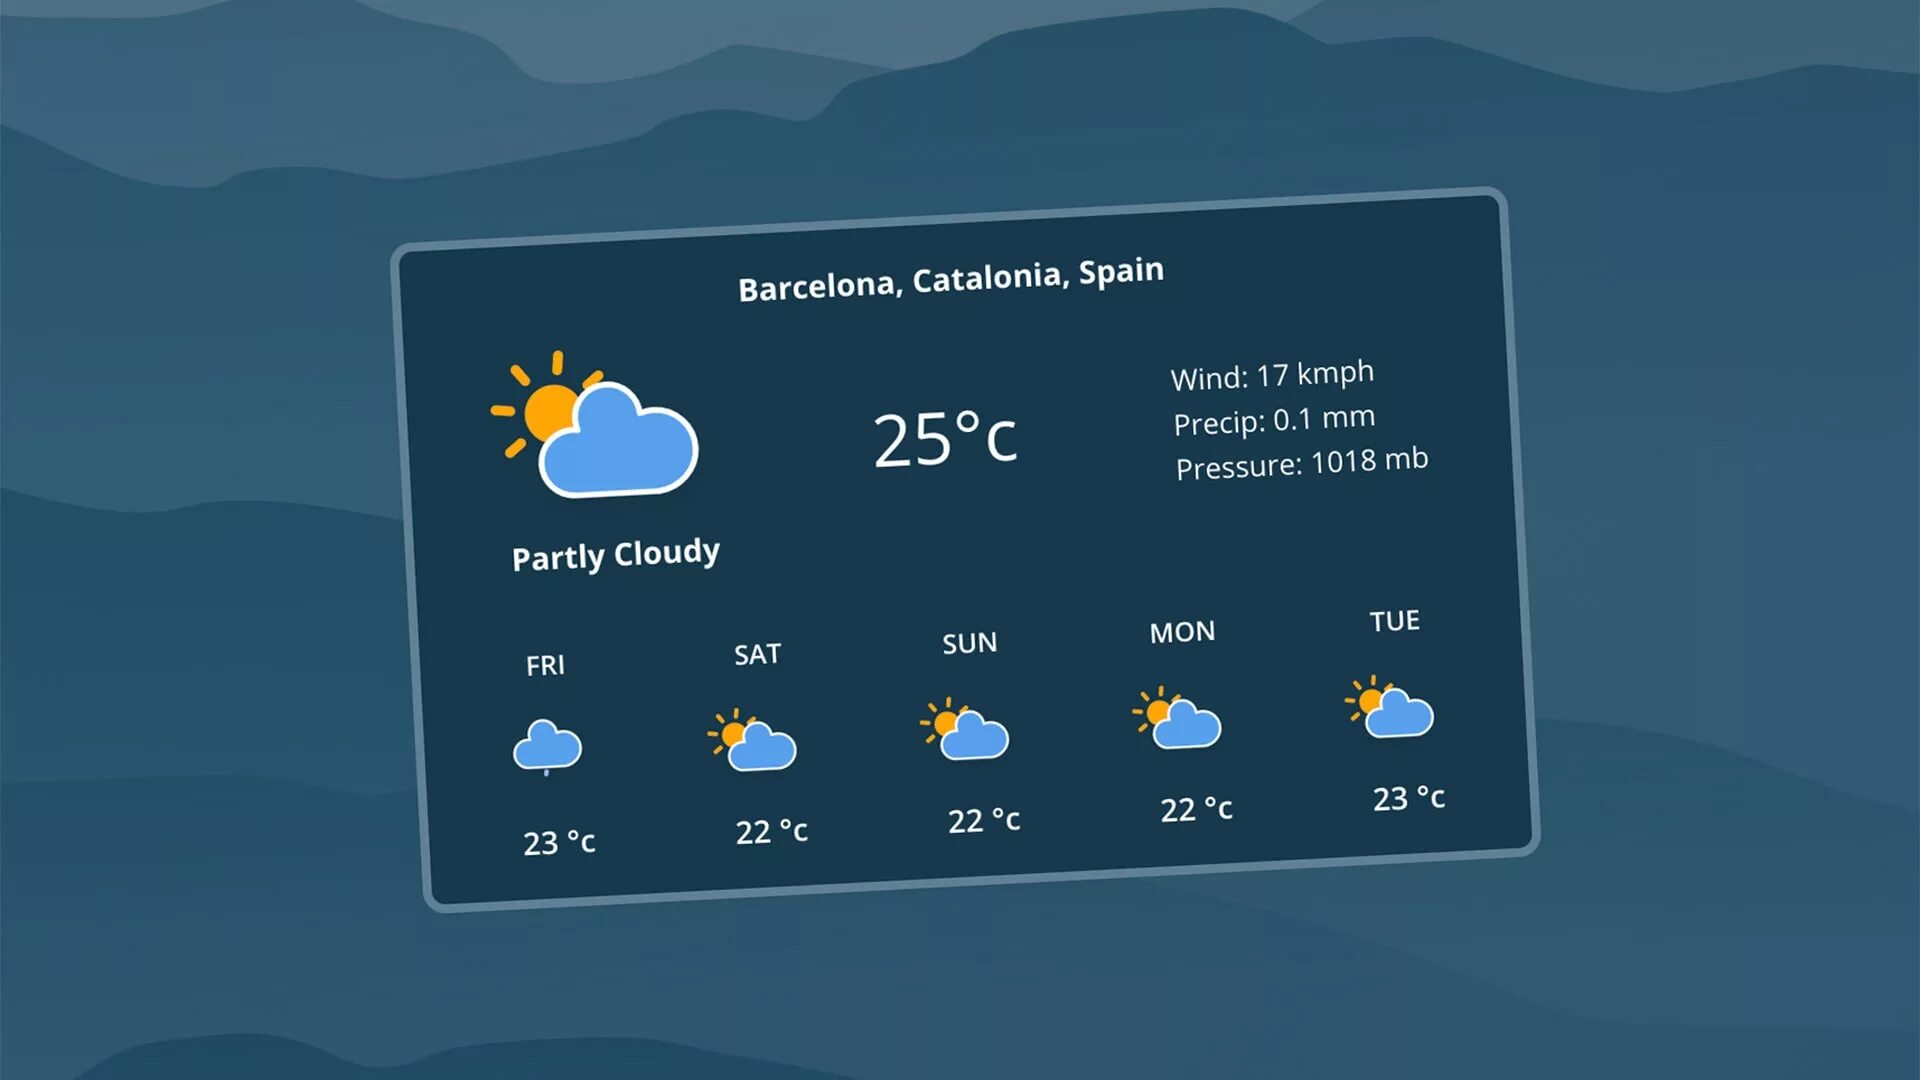 Погода апи. API погоды. Приложение погода. Прогноз погоды. Интерфейс приложения погоды.